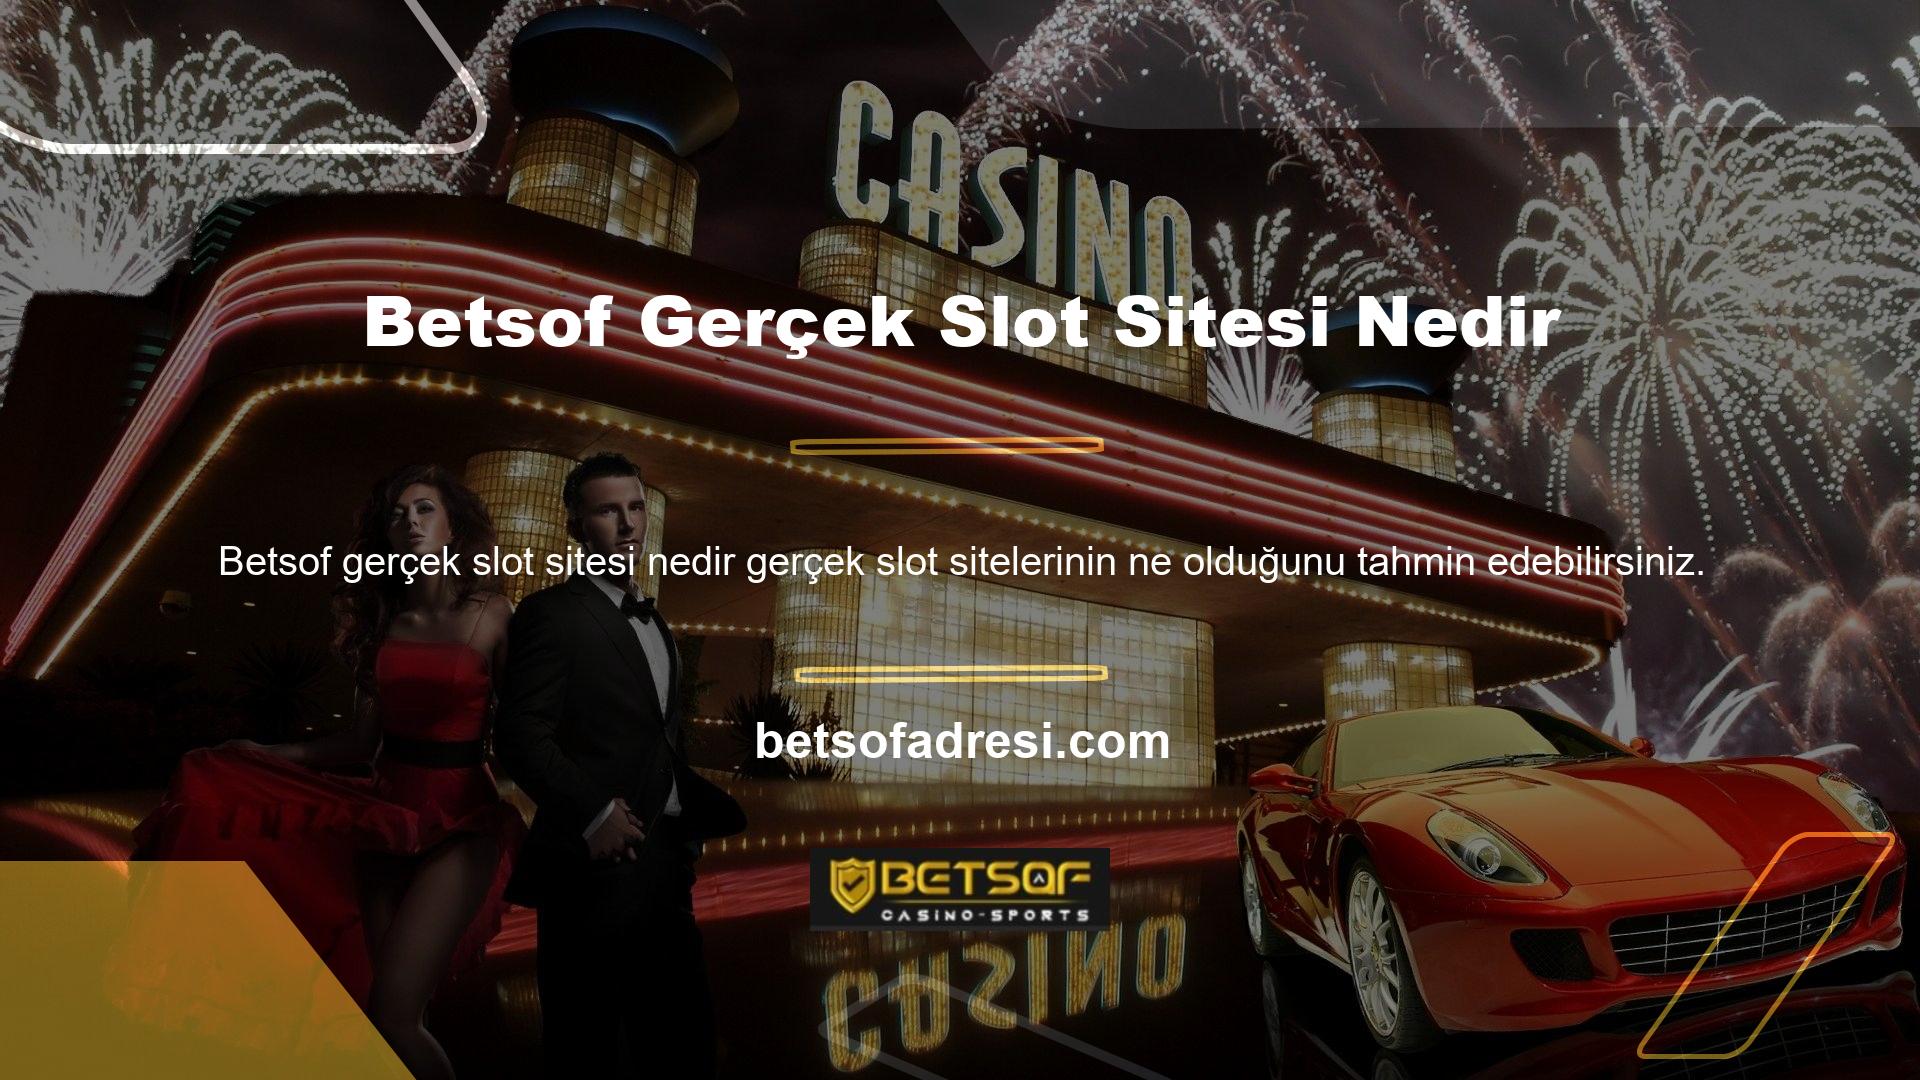 Betsof Real Slots Sitesi web sitesinde finansal katılım gibi özellikler bulunmaktadır